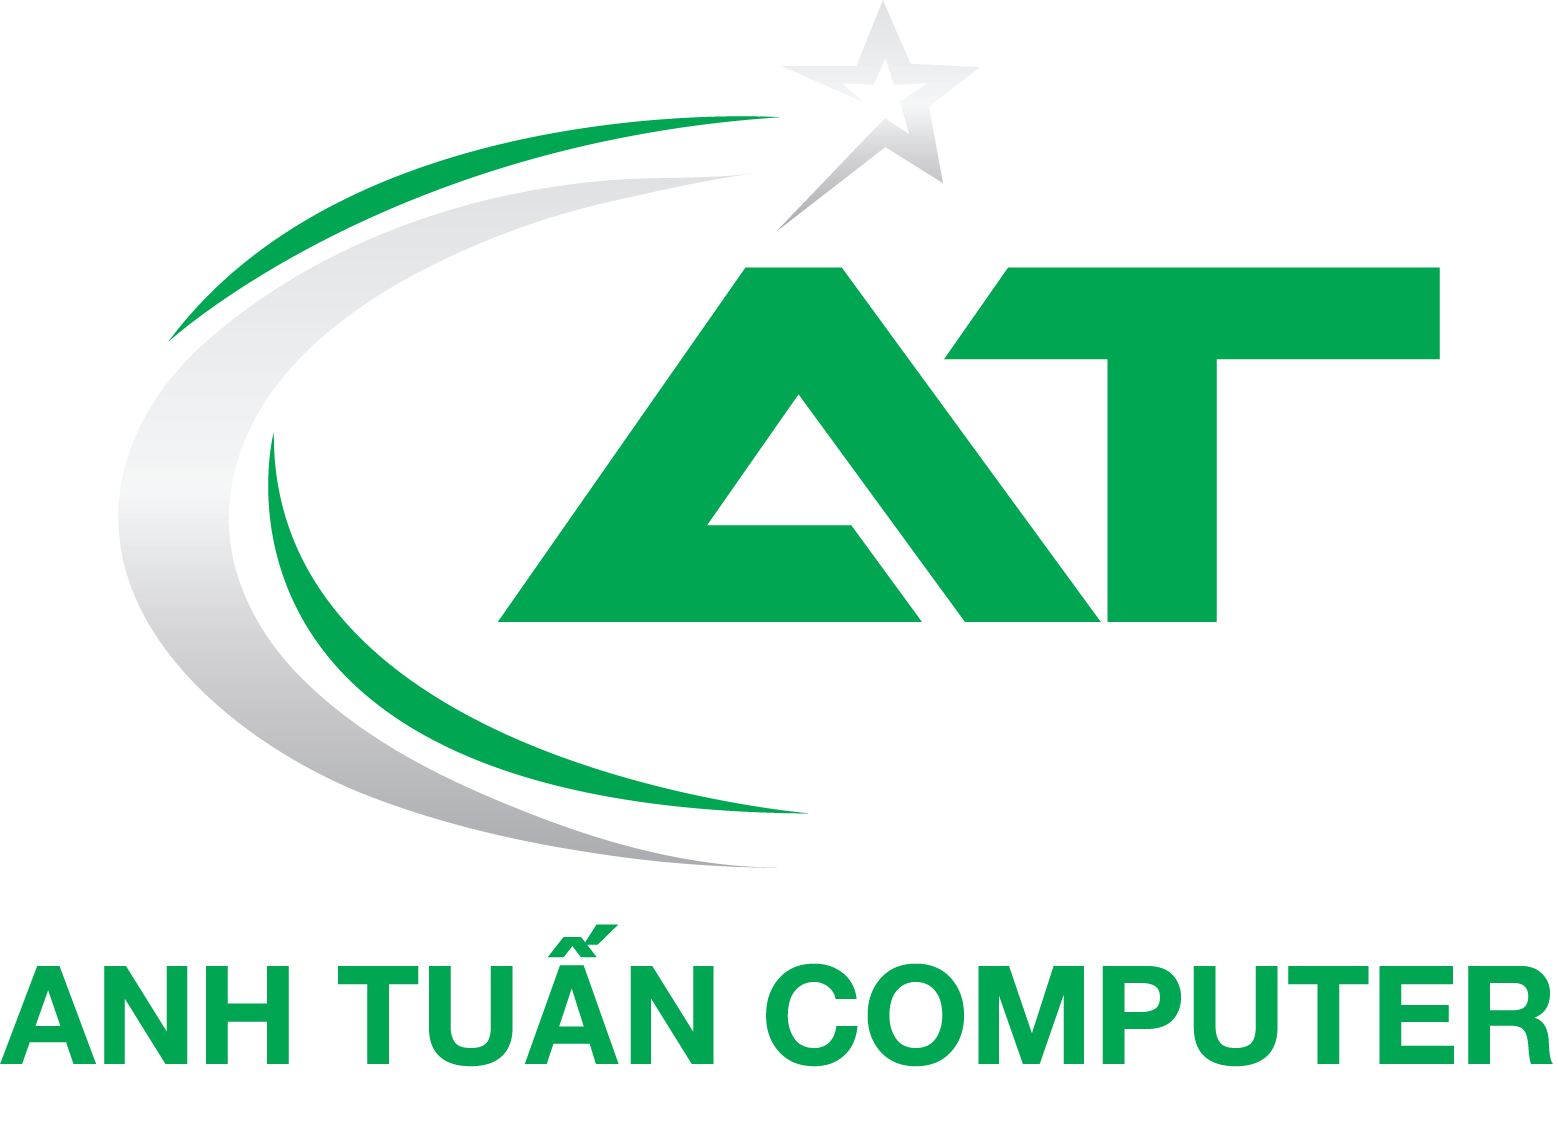 ANH TUẤN COMPUTER